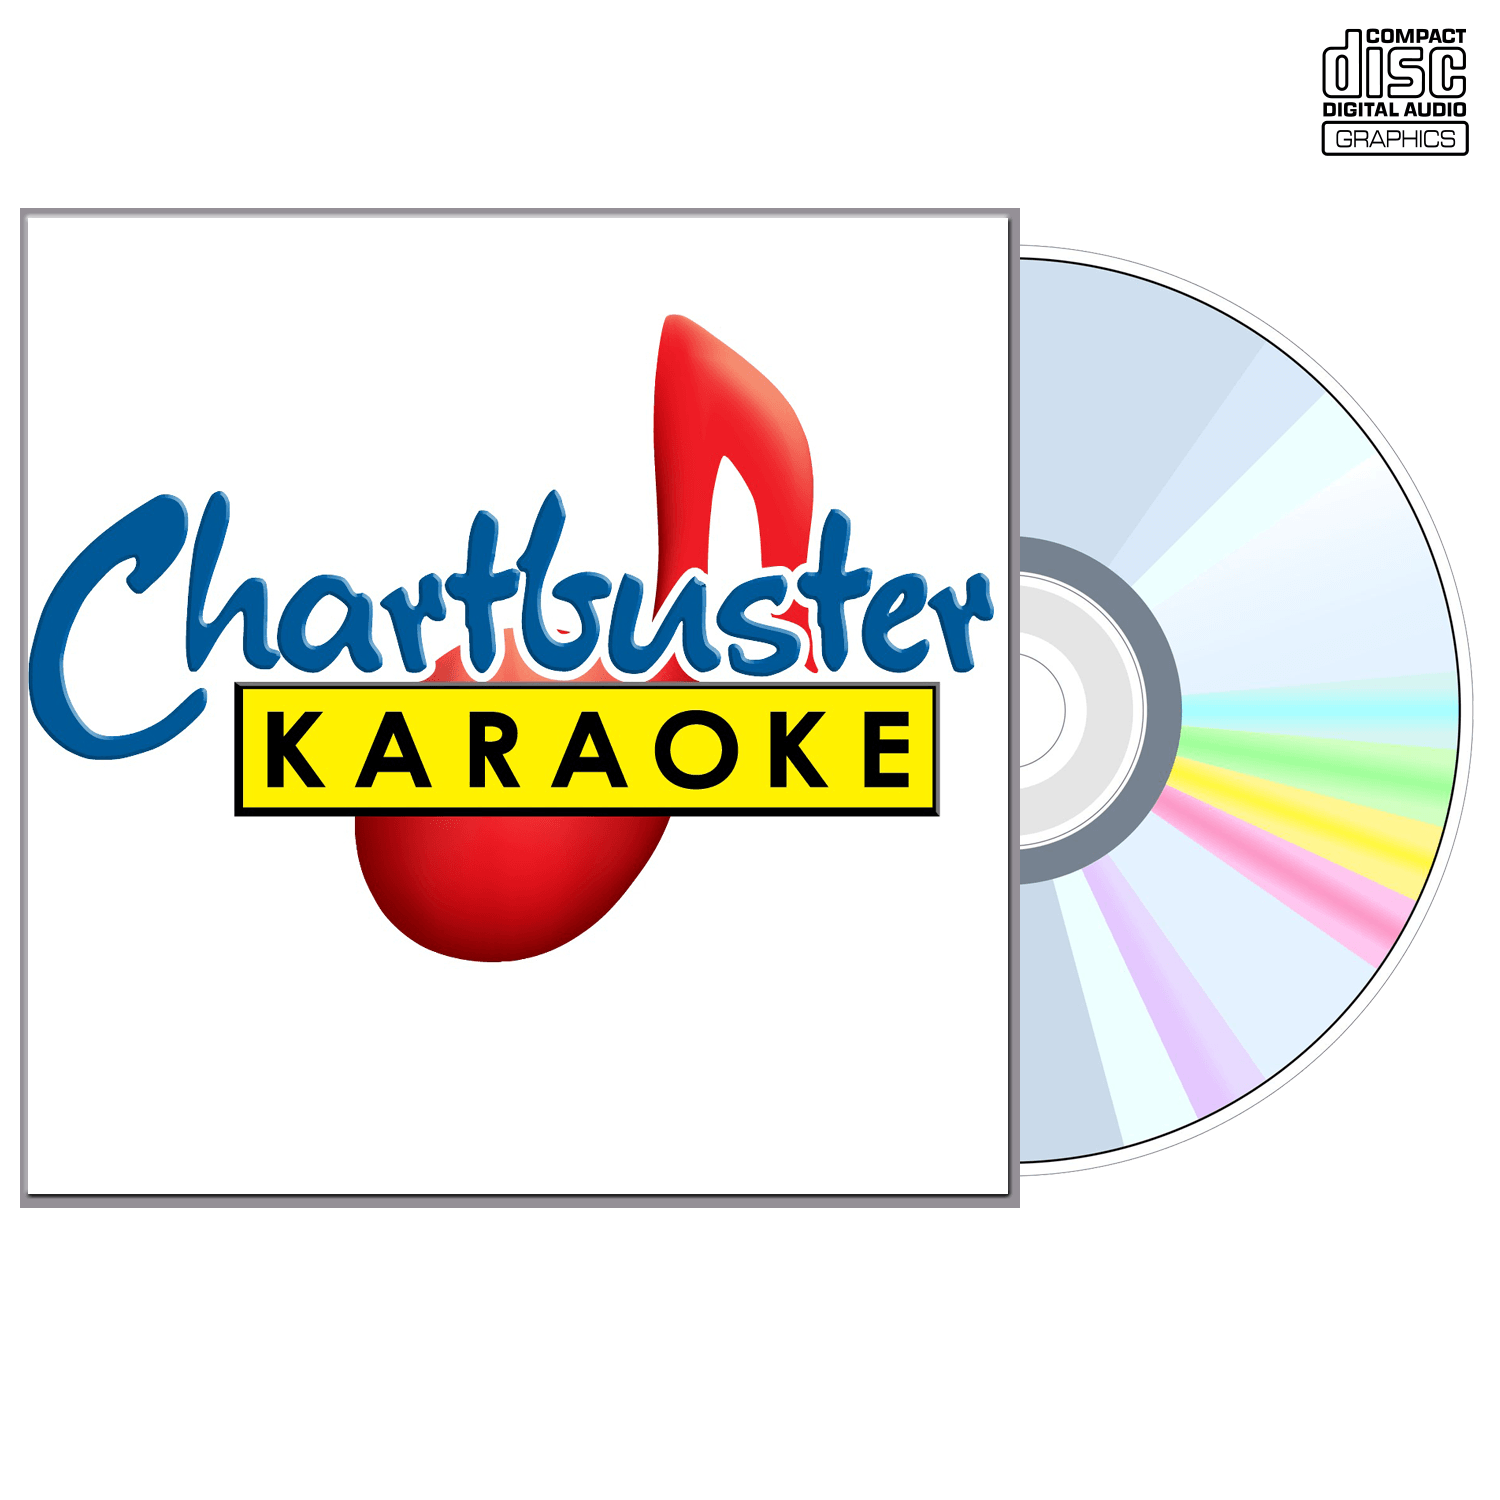 Paul Anka - CD+G - Chartbuster Karaoke - Karaoke Home Entertainment